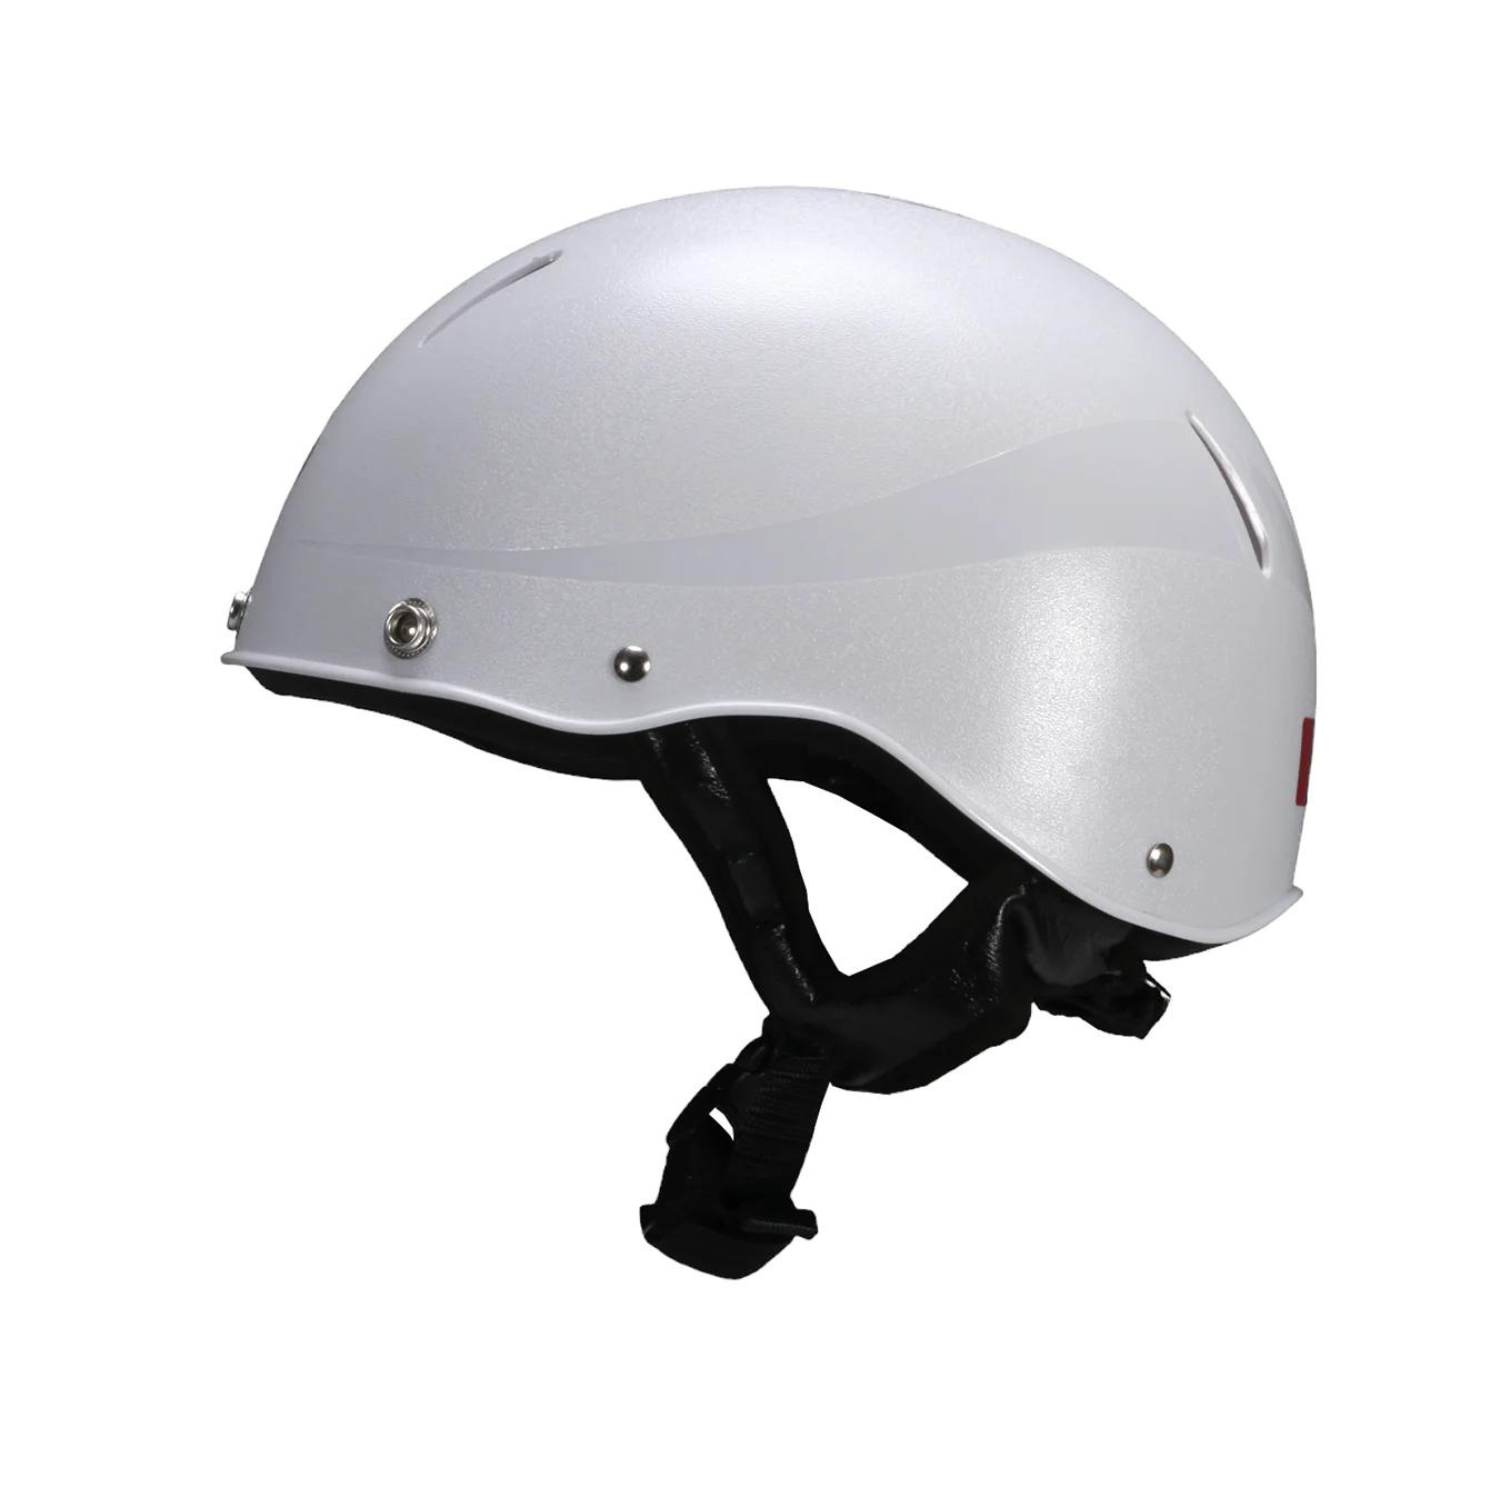 New Derby Safety Helmet